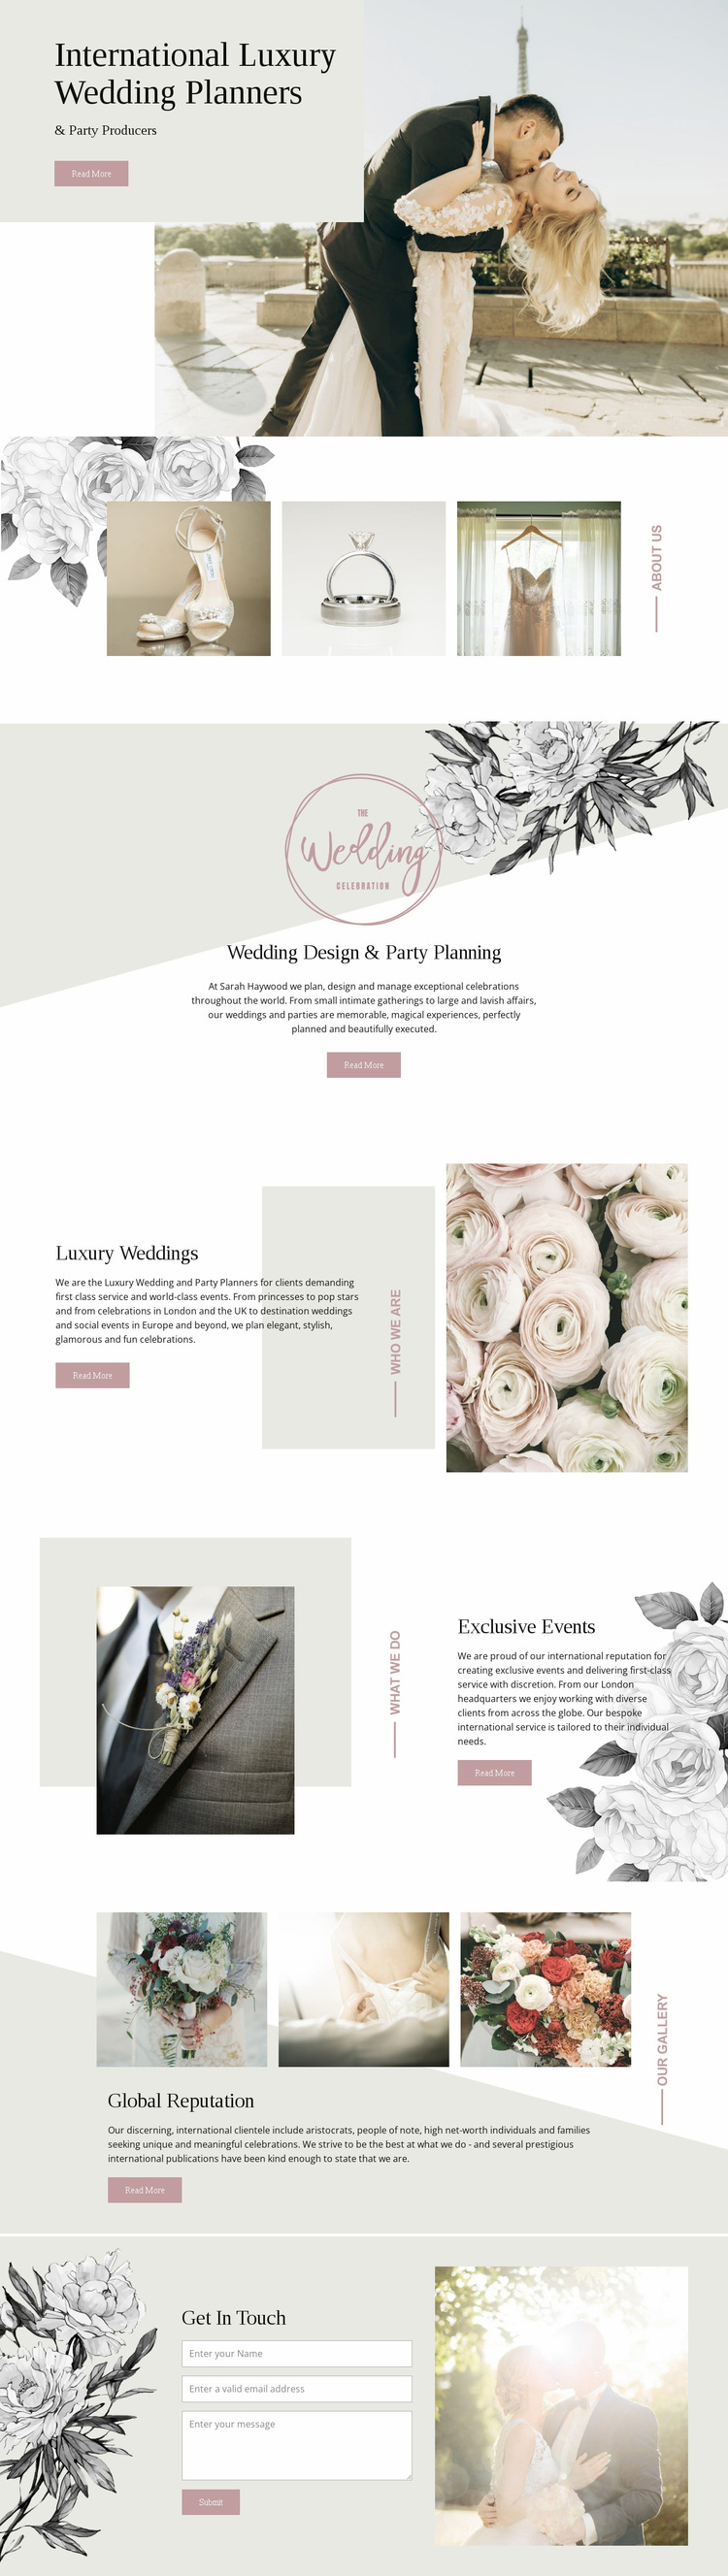 Planners of luxury wedding Website Design